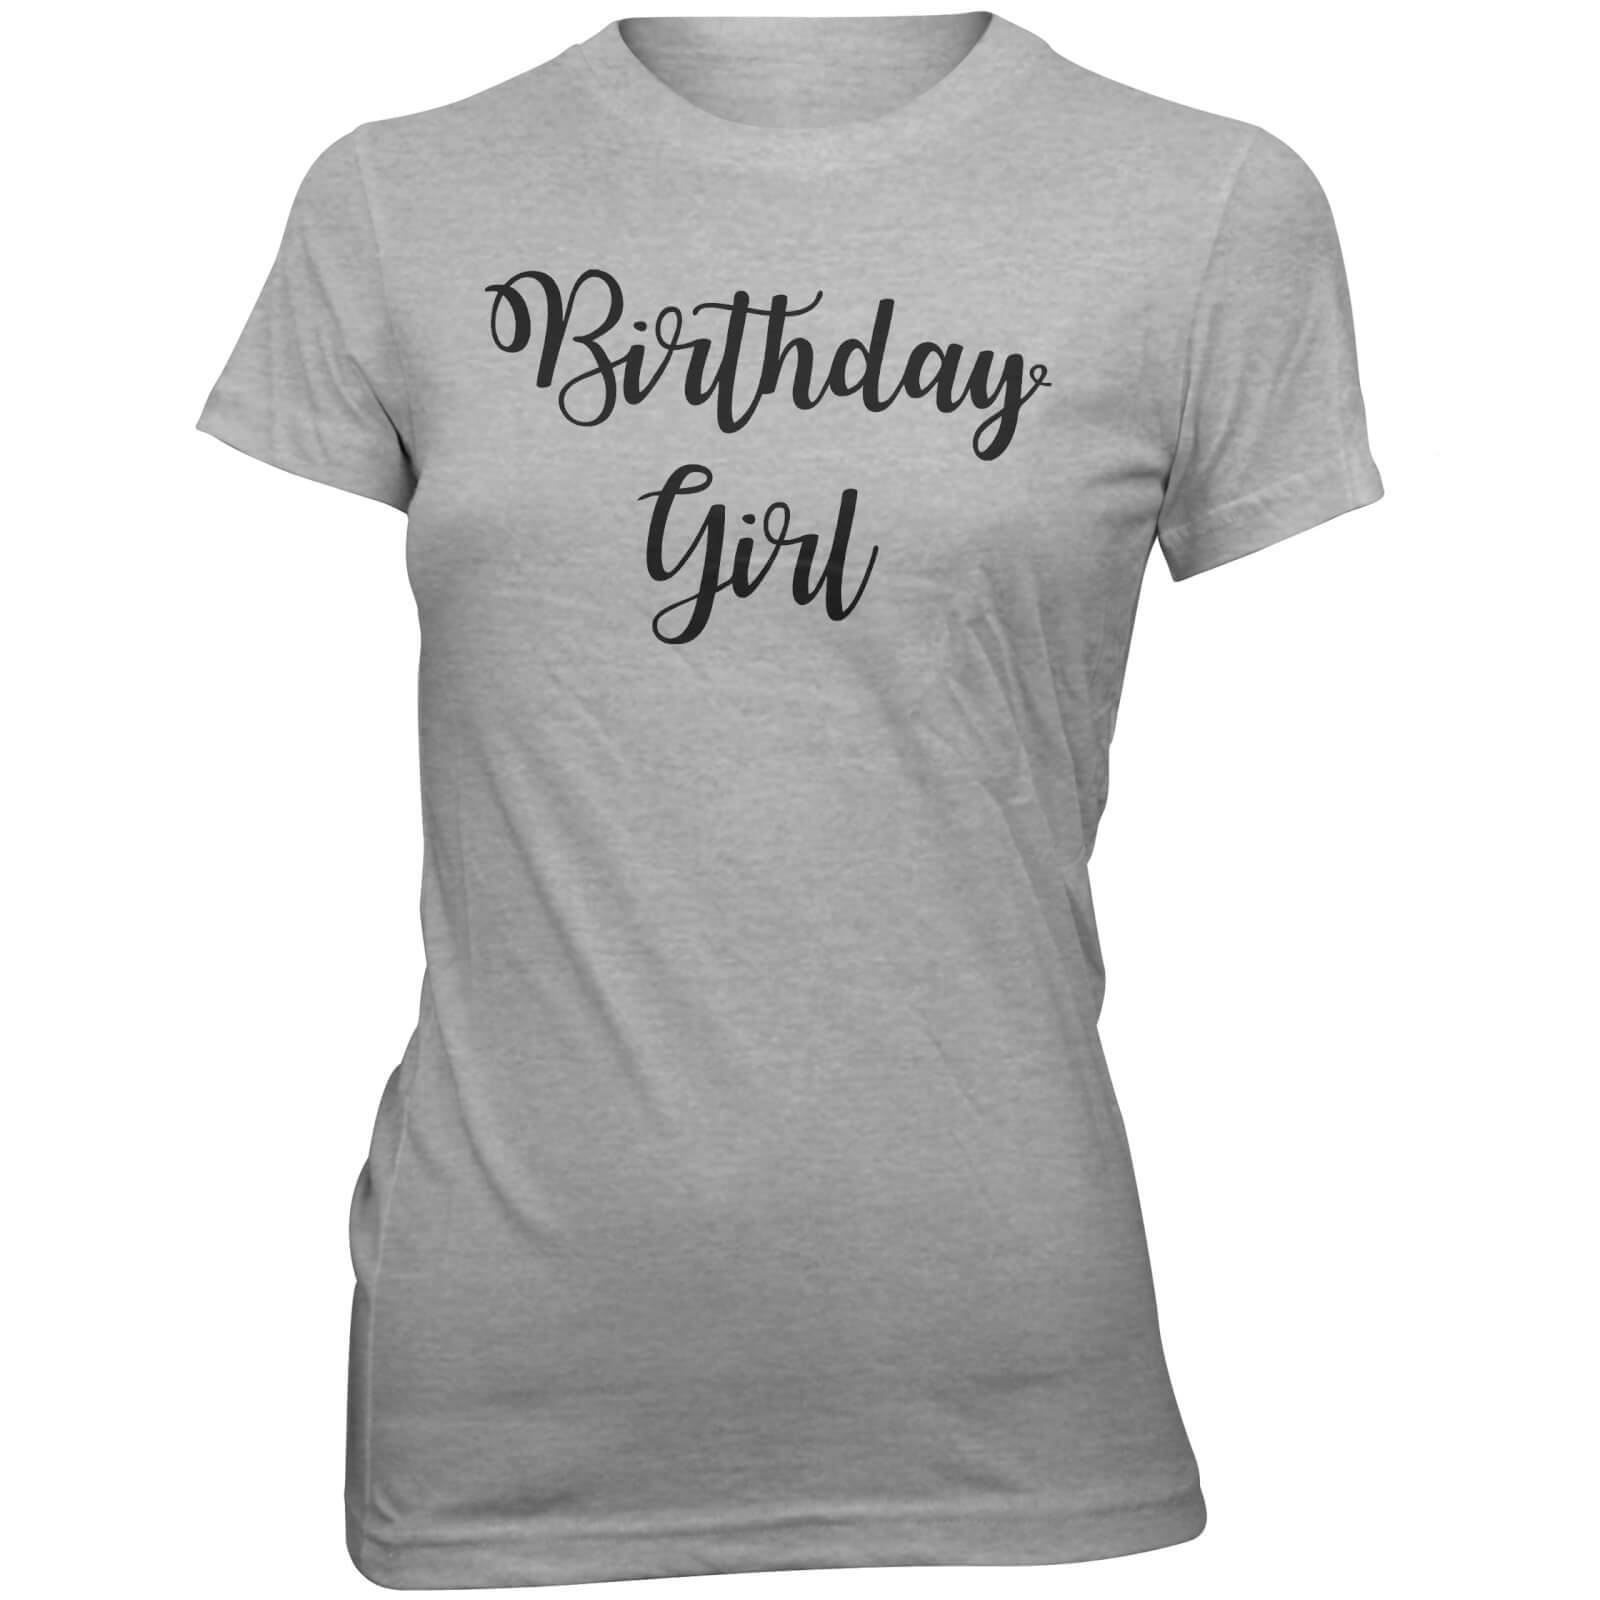 Birthday Girl Women's Slogan T-Shirt - S - Grey